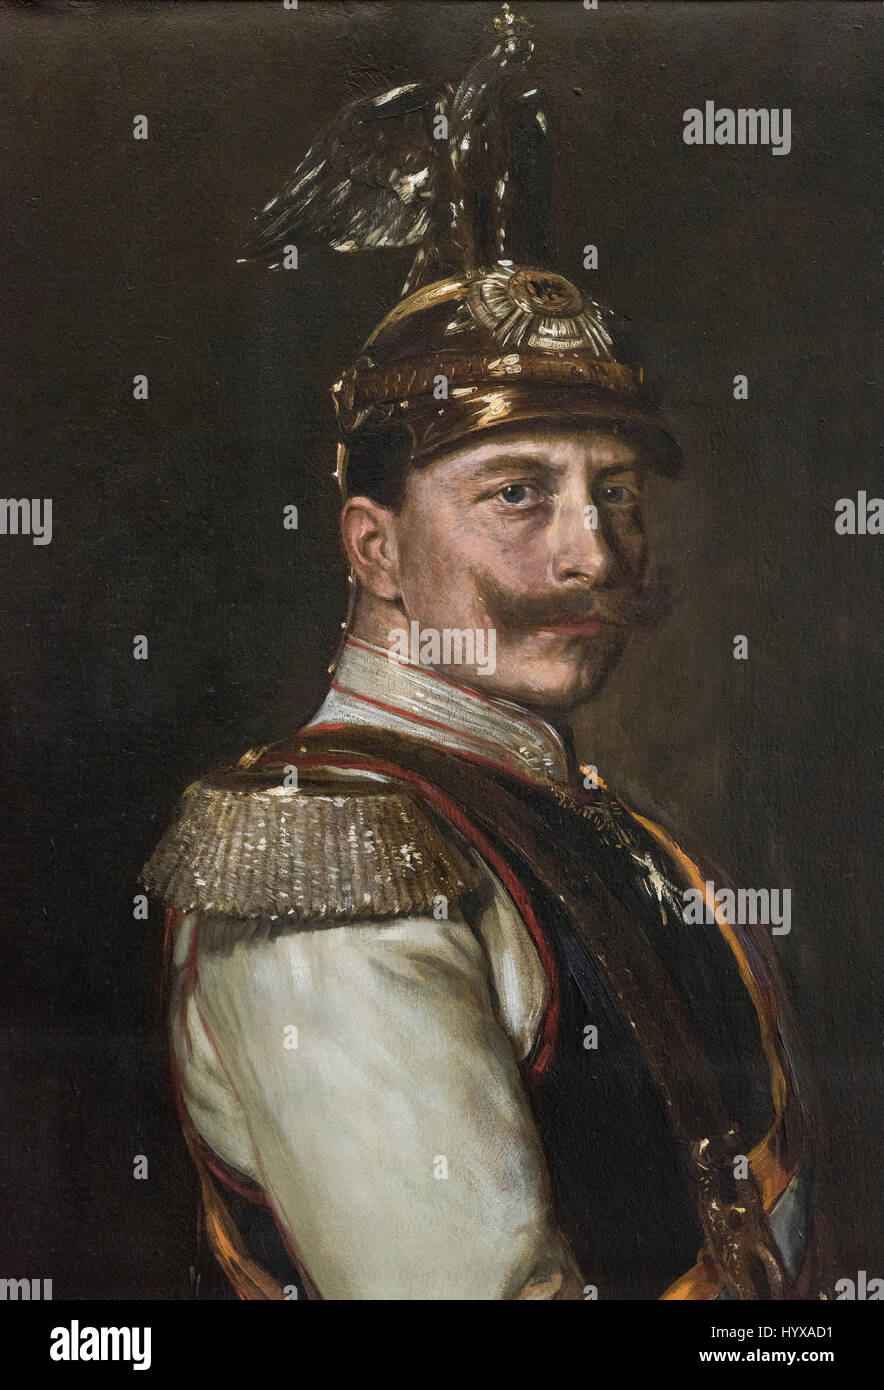 Vilma Parlaghy (1863-1923), il Ritratto di Kaiser Wilhelm II (dettaglio), 1895. Alte Nationalgalerie di Berlino. Foto Stock